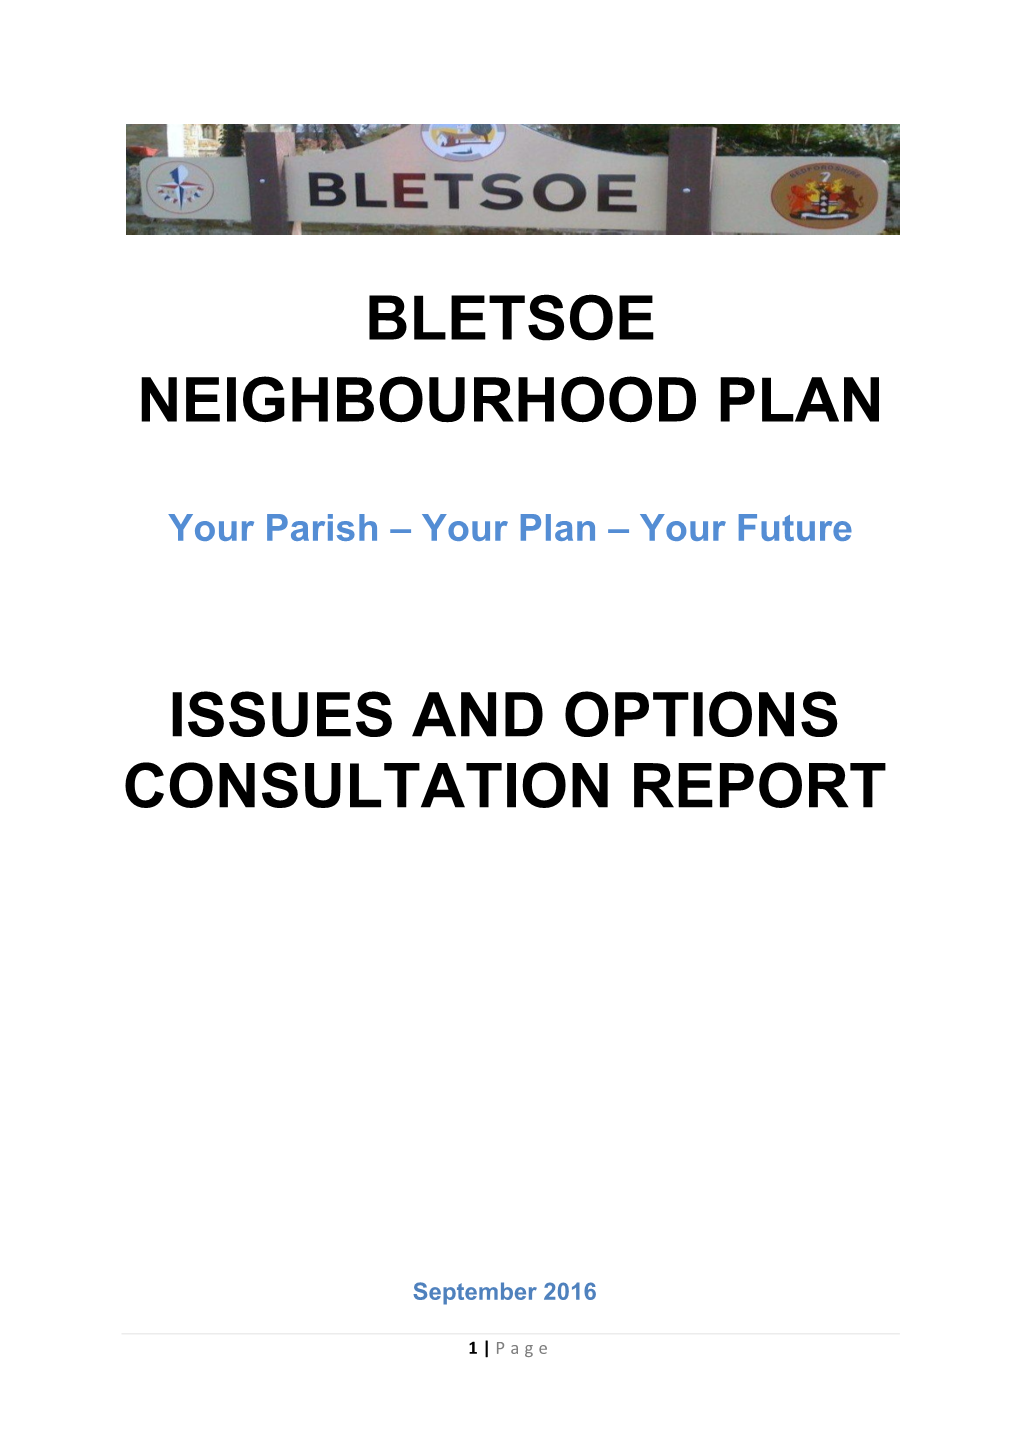 Bletsoe Neighbourhood Plan Issues and Options